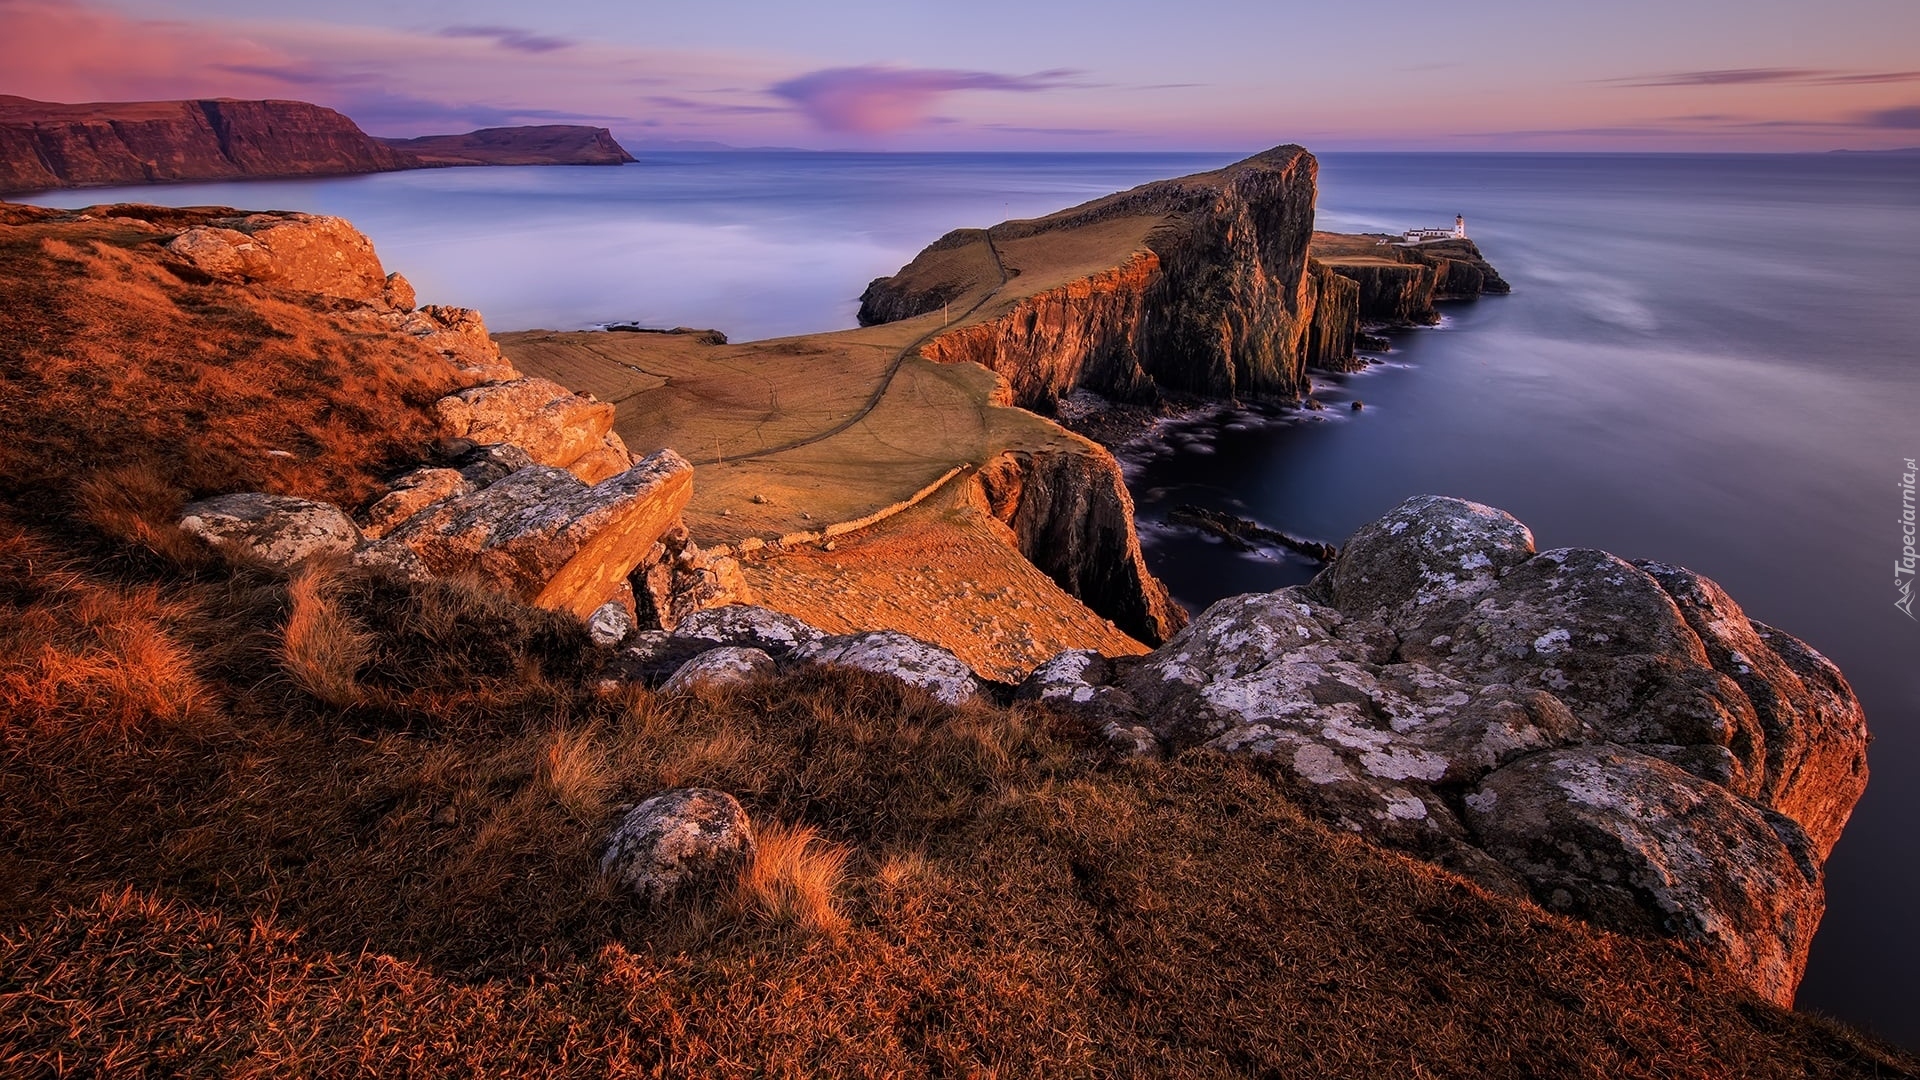 Morze Szkockie, Wybrzeże, Skały, Wyspa Skye, Latarnia morska, Neist Point Lighthouse, Półwysep Duirinish, Szkocja